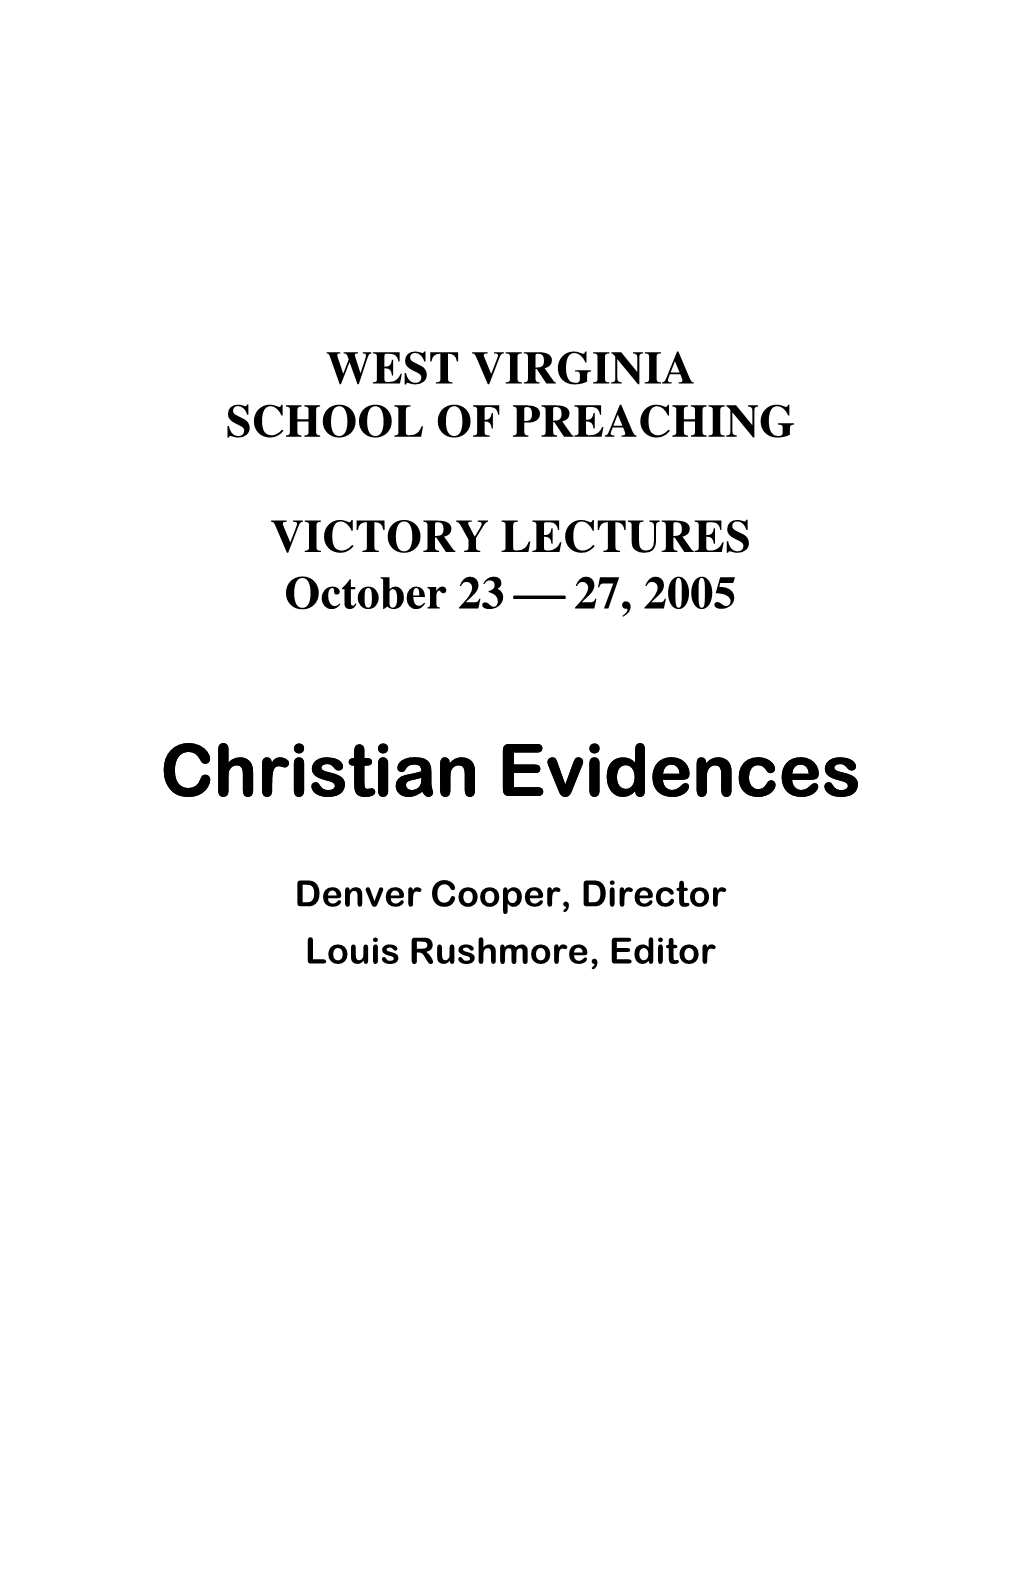 Christian Evidences Christian Evidences